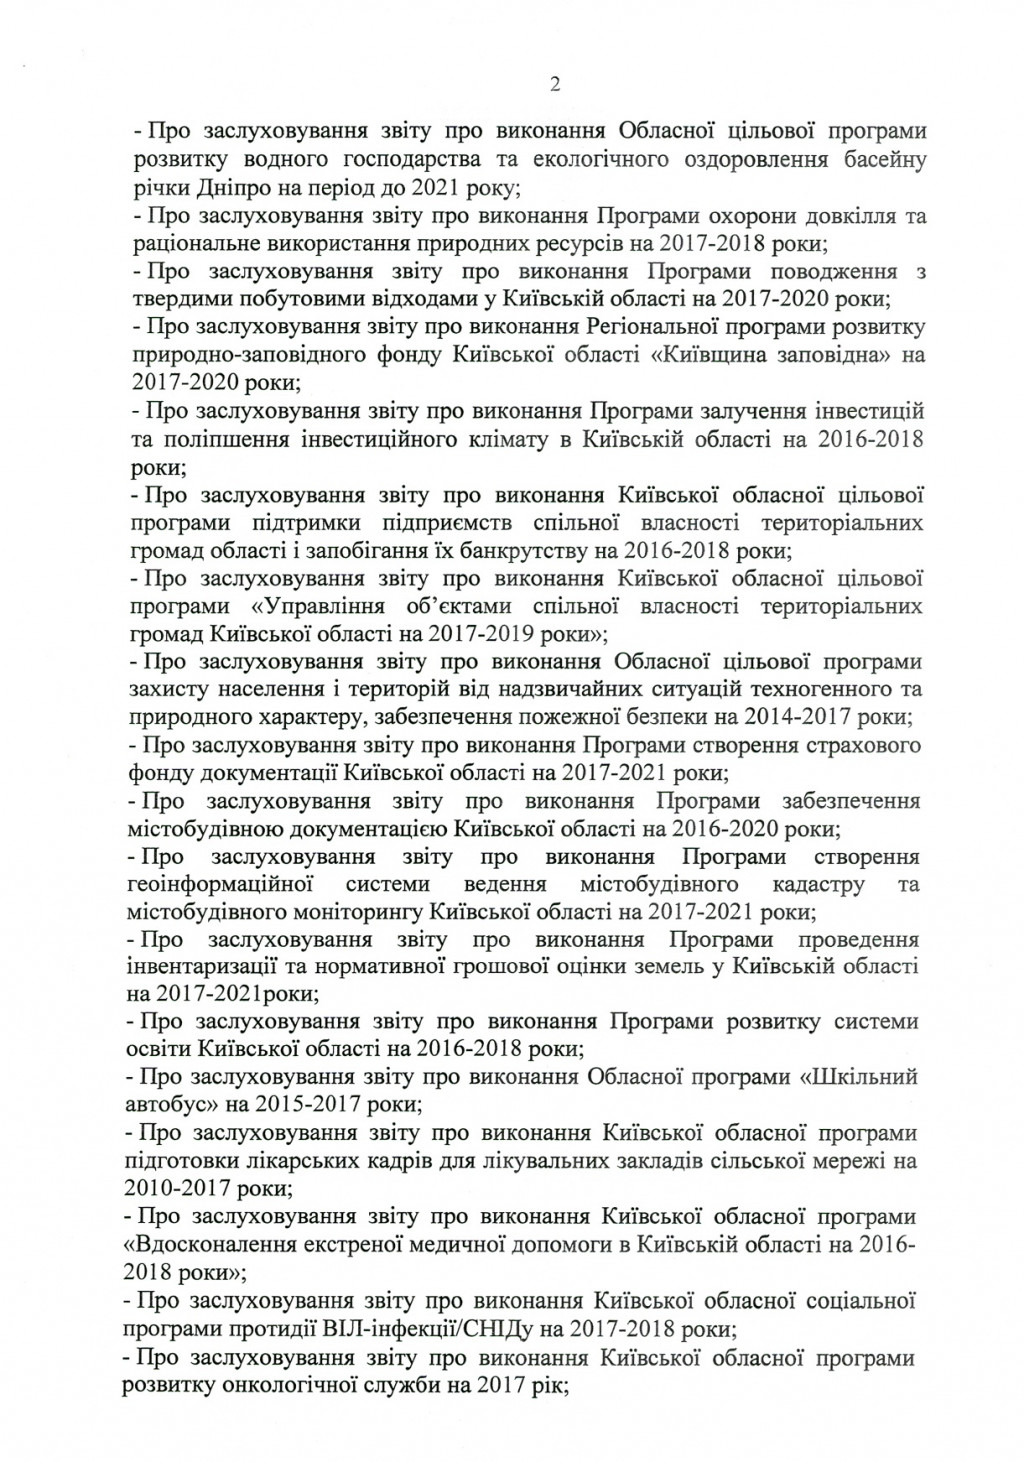 Внеочередное заседание Киевоблсовета будет 27 апреля